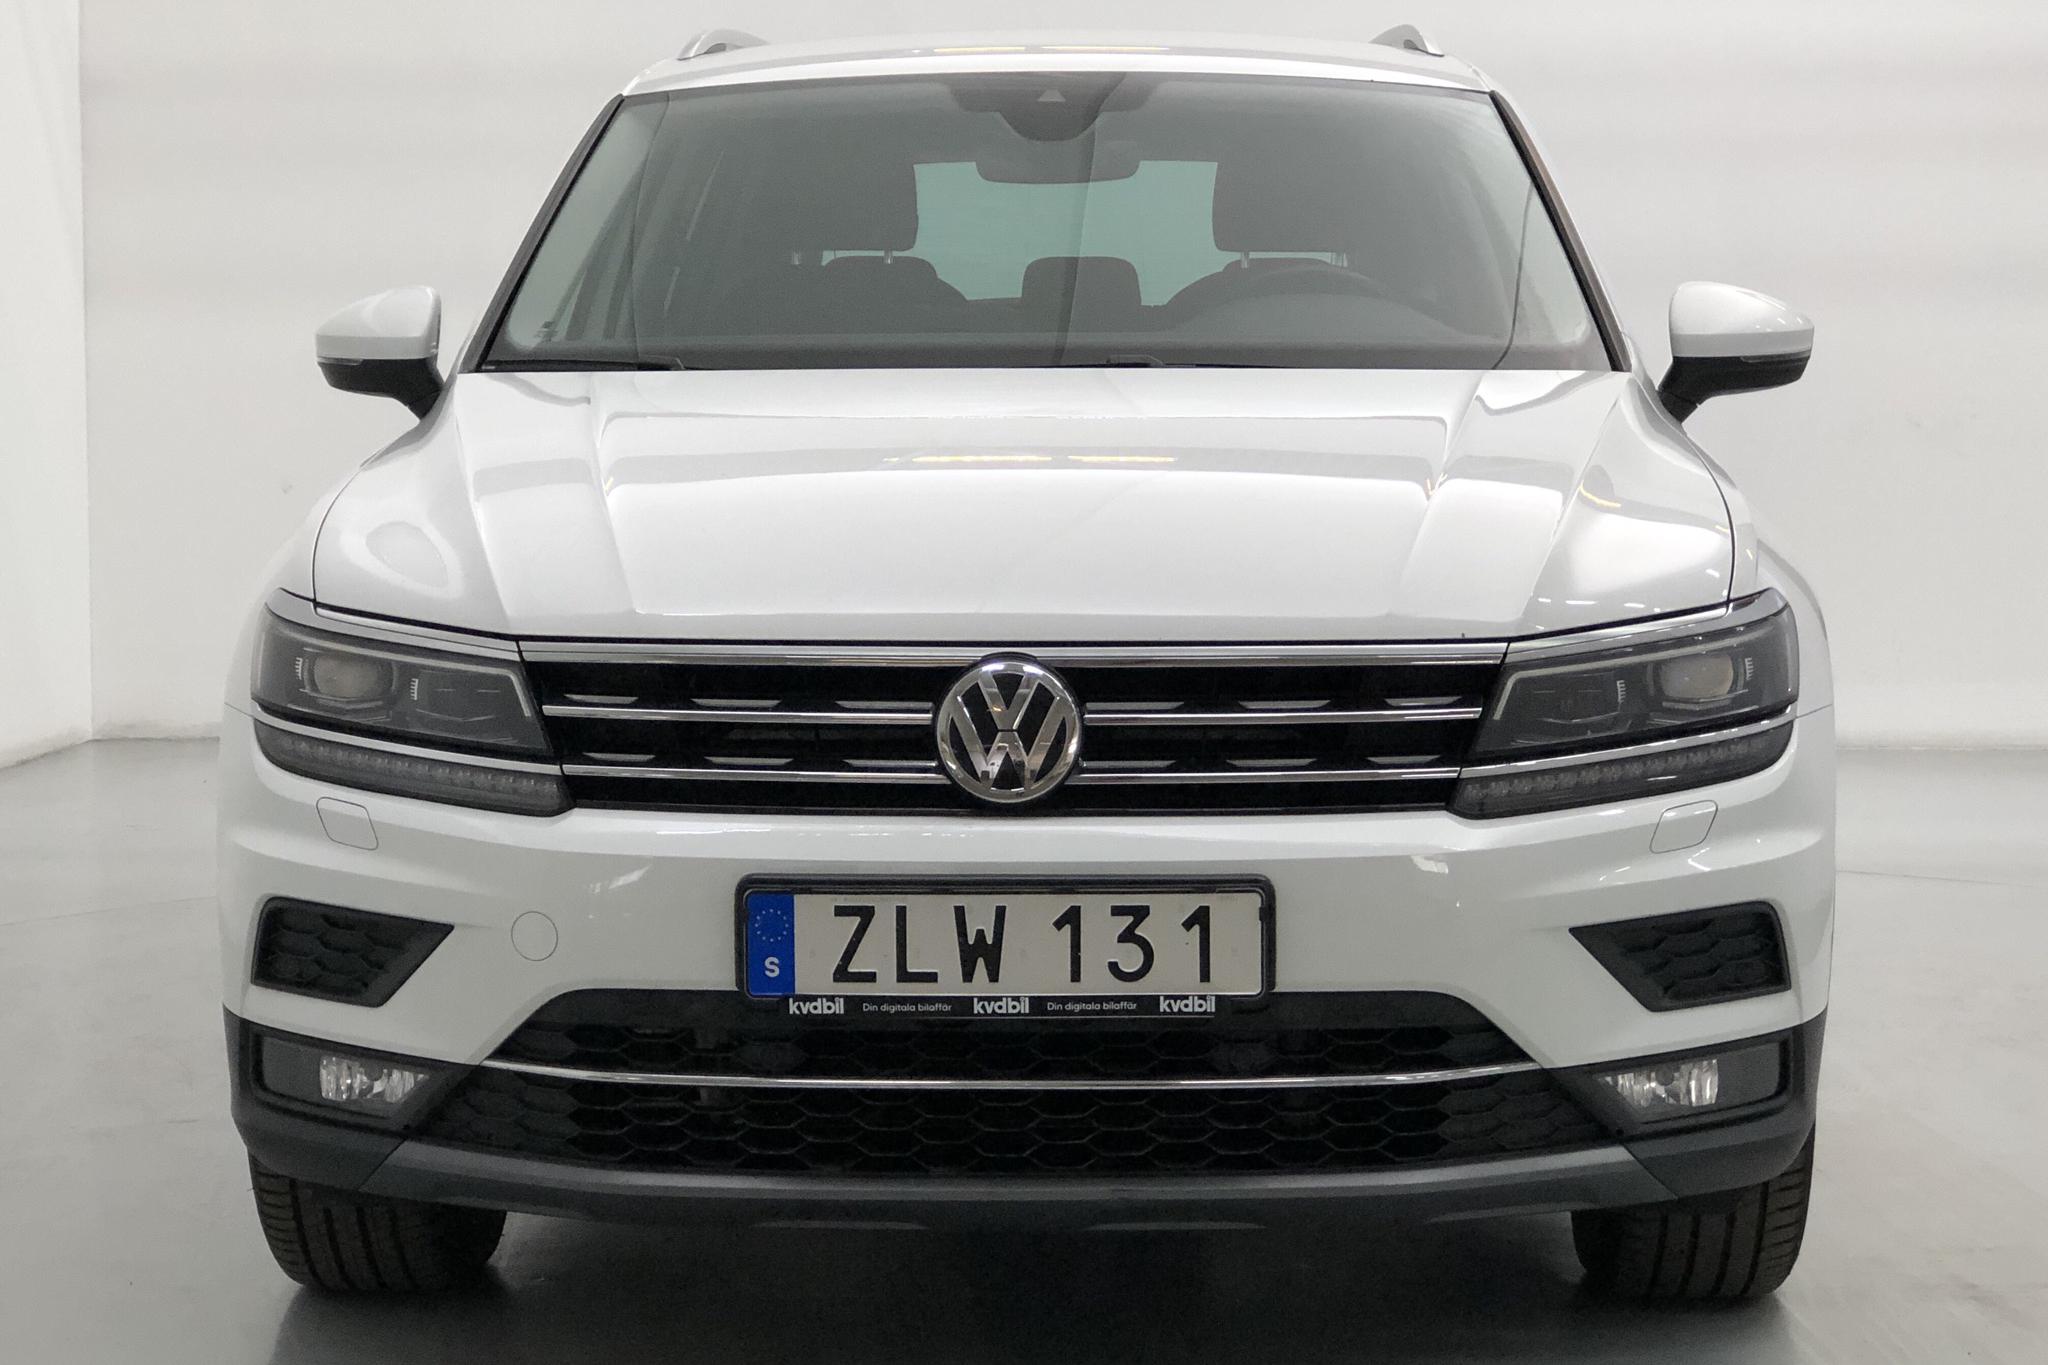 VW Tiguan 2.0 TDI 4MOTION (190hk) - 125 030 km - Automatic - white - 2018